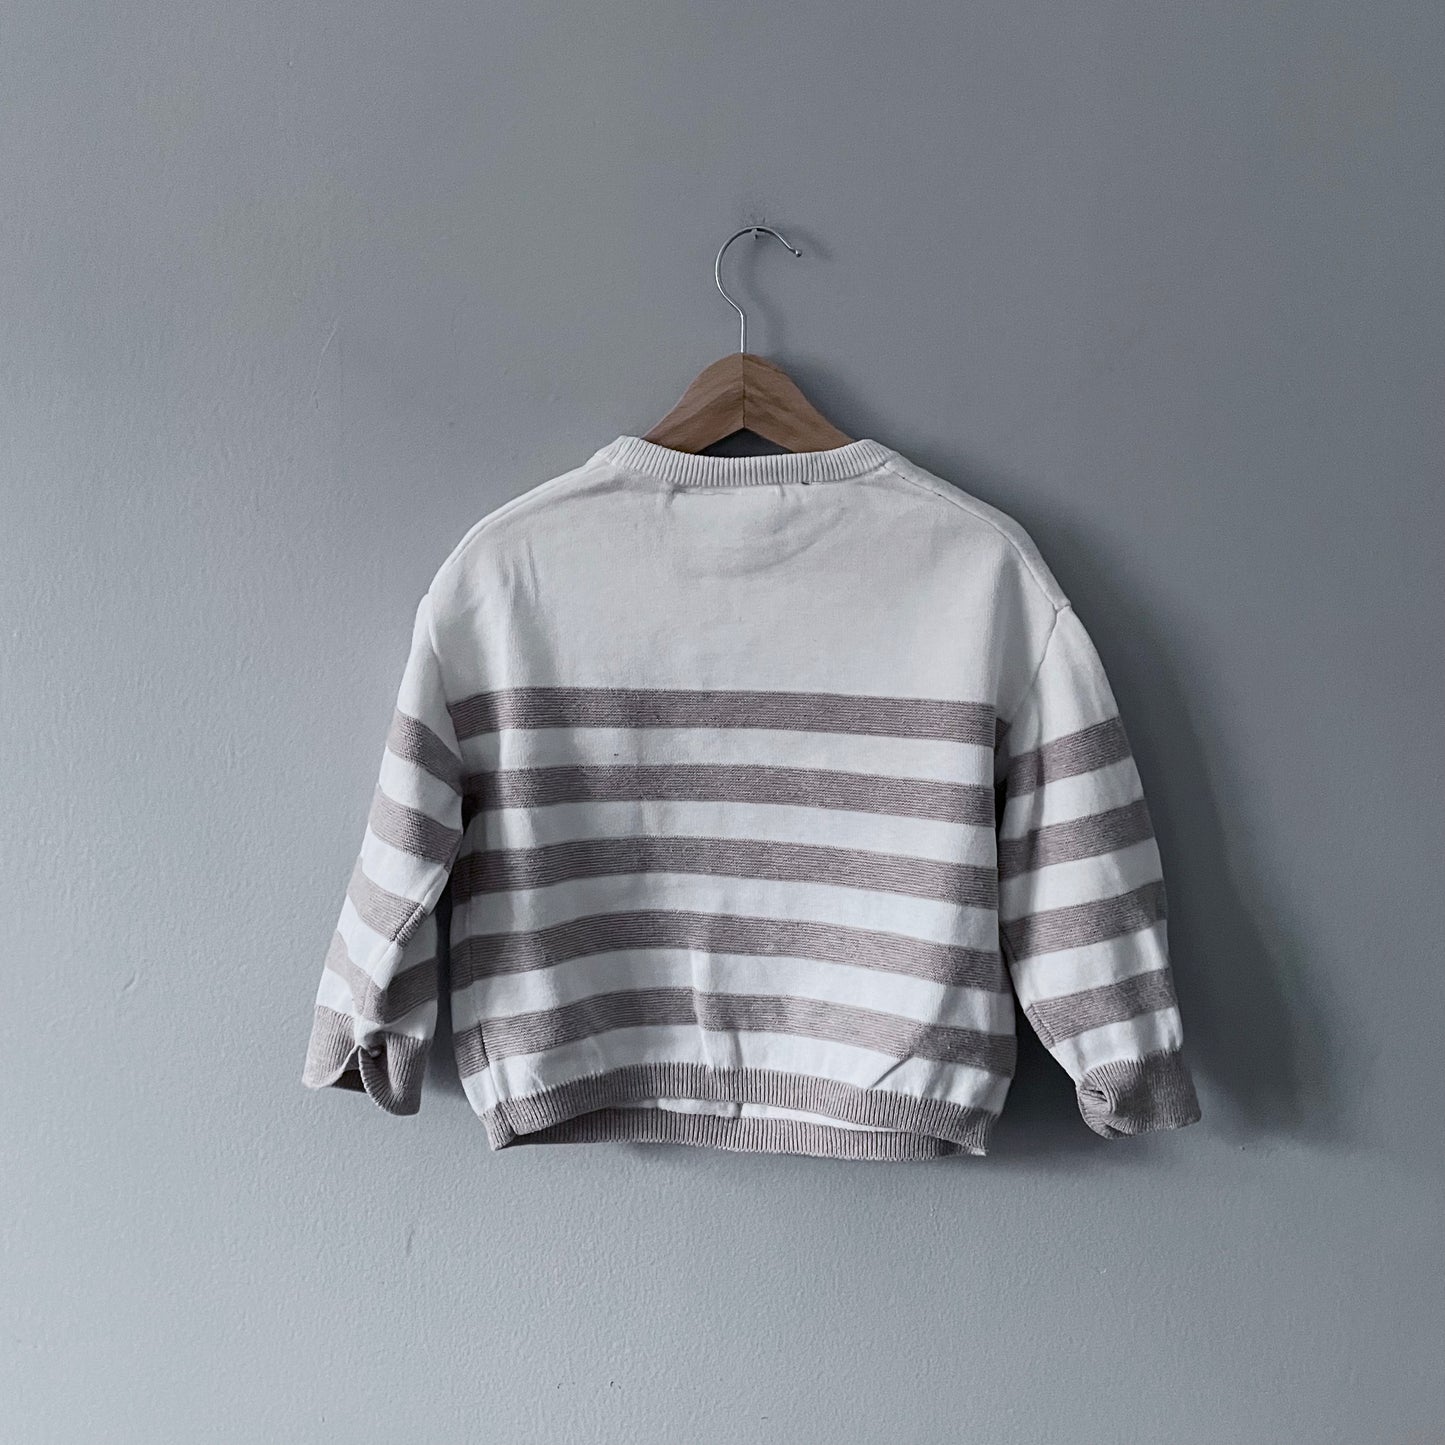 Zara / White x beige stripe knit pullover / 18-24M